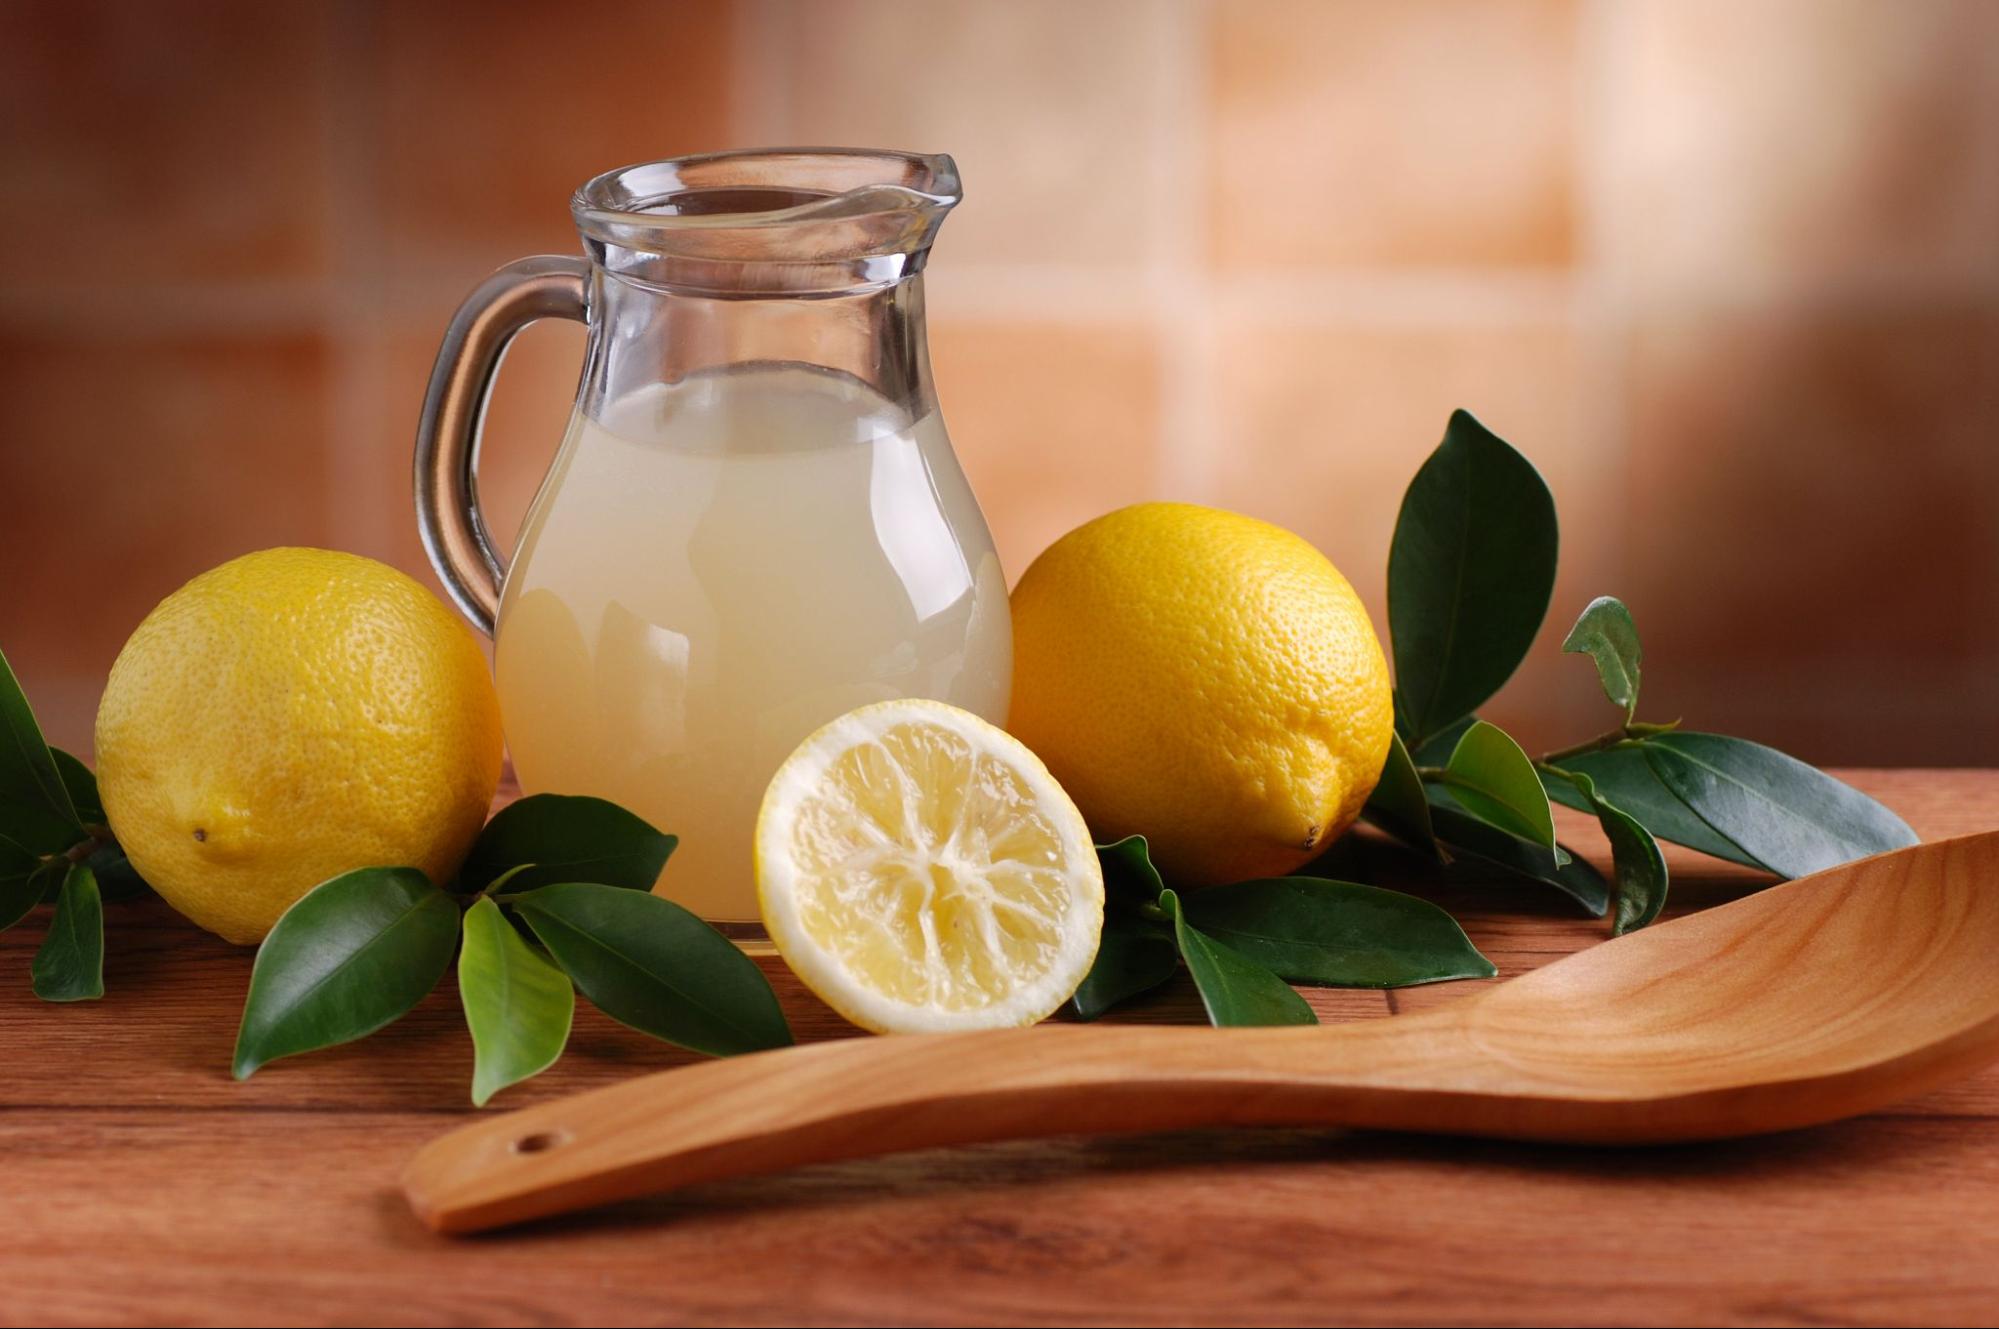 How to Dissolve Kidney Stones With Lemon Juice?